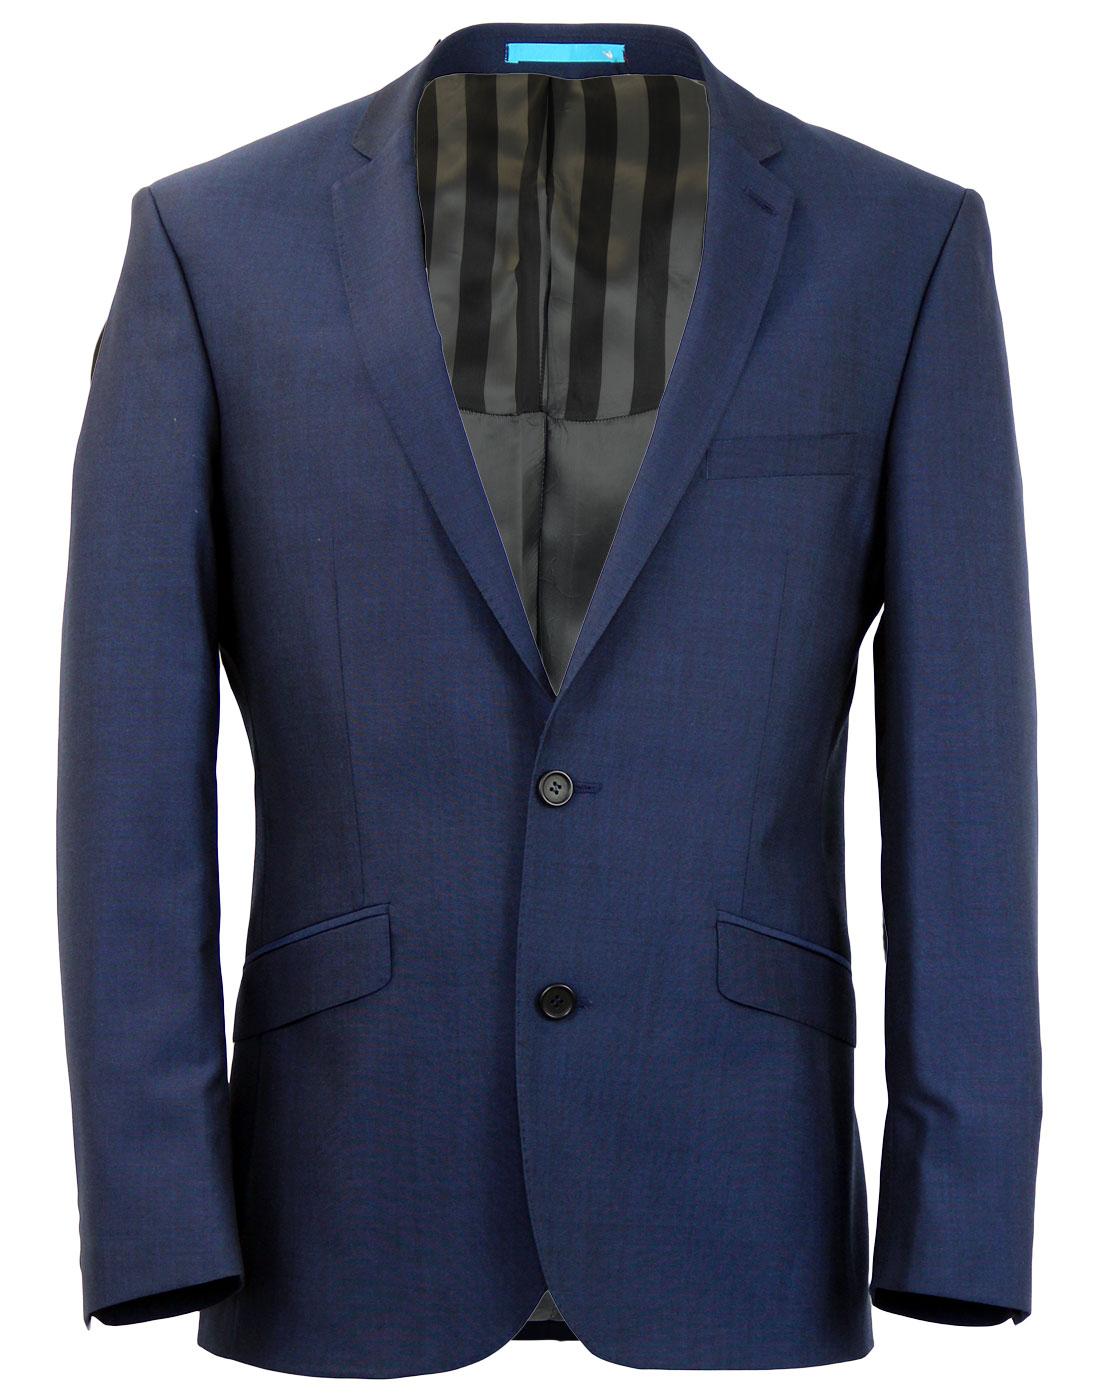 Retro 60s Mod 2 Button Suit Jacket INK BLUE